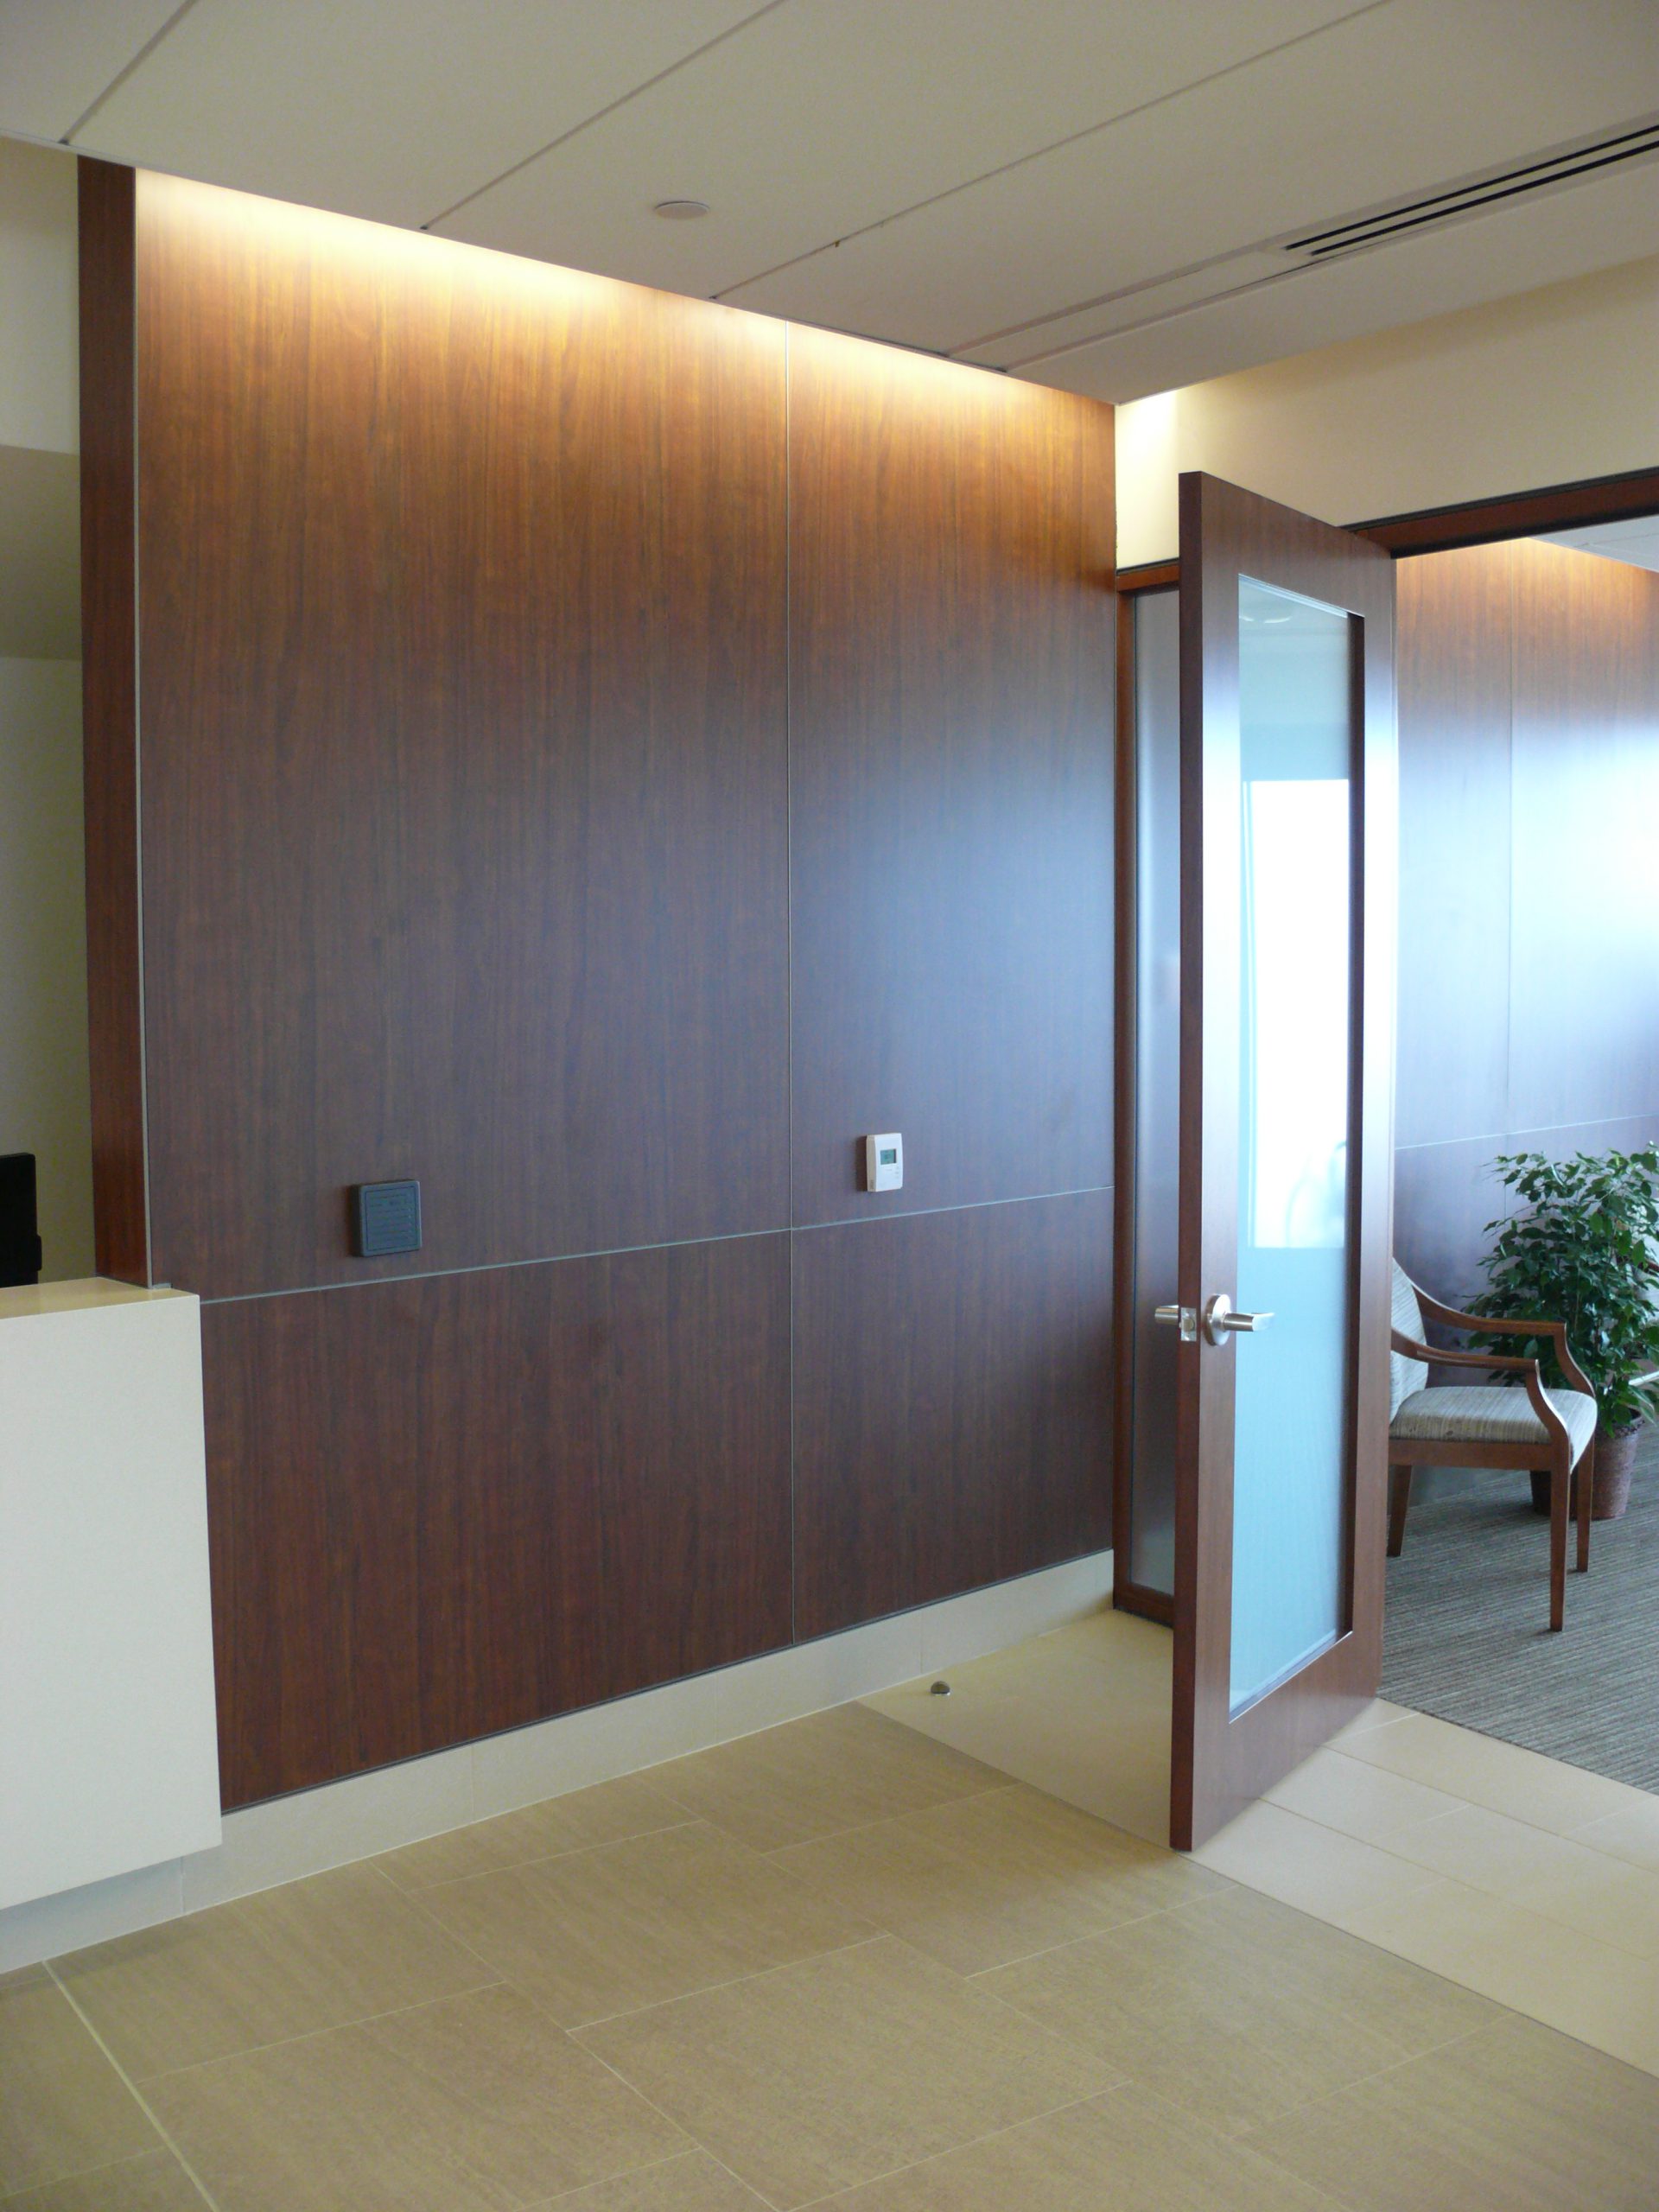 Pomona Valley Hospital Elevator Lobby Entrance